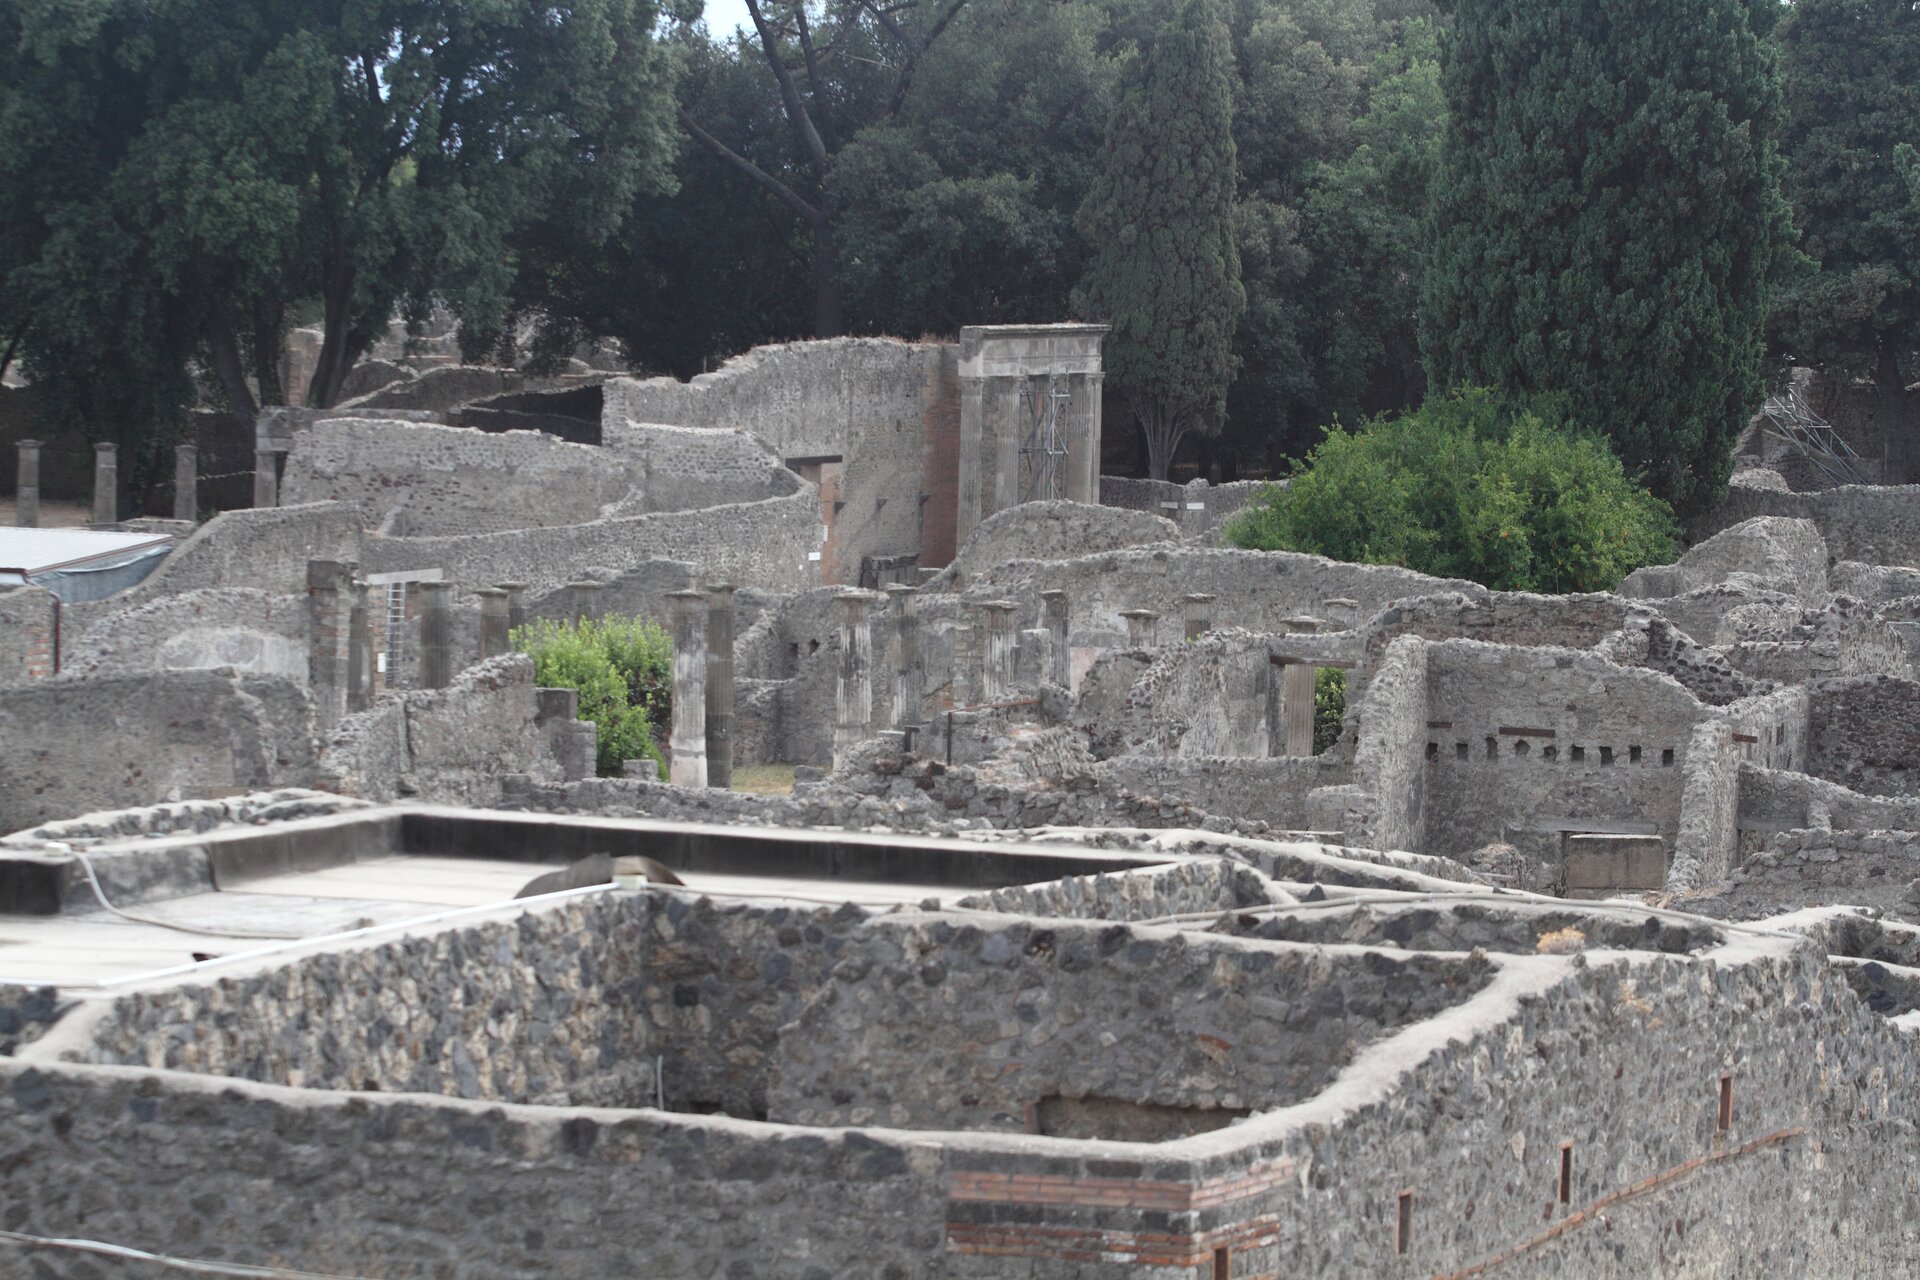 Fotografia nieznanego autora przedstawia widok na zrujnowane miasto - Pompeje.  Ściany ruin budynków zbudowane są z szarej cegły. W tle widoczne są wysokie drzewa. 